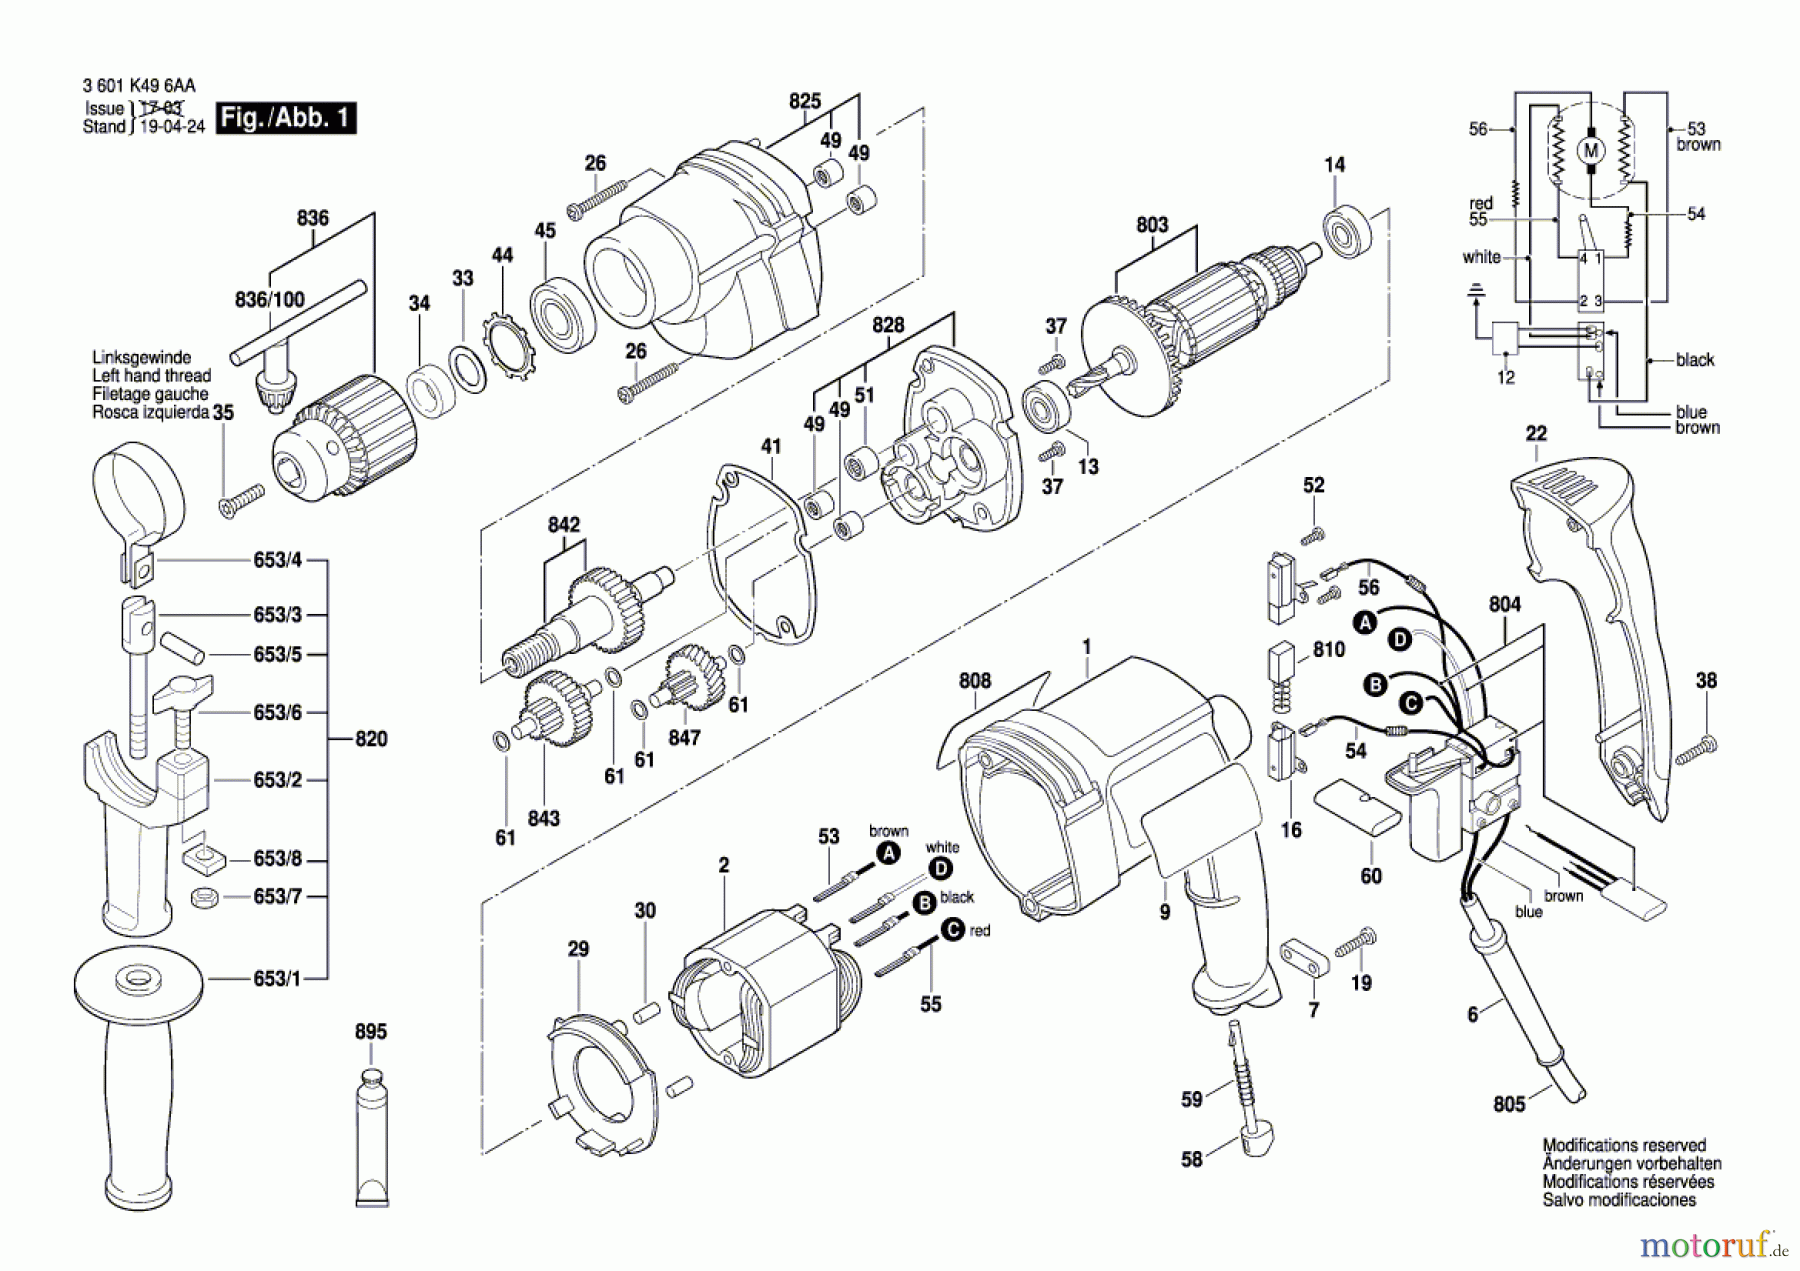  Bosch Werkzeug Bohrmaschine BTI-BM 550 E Seite 1